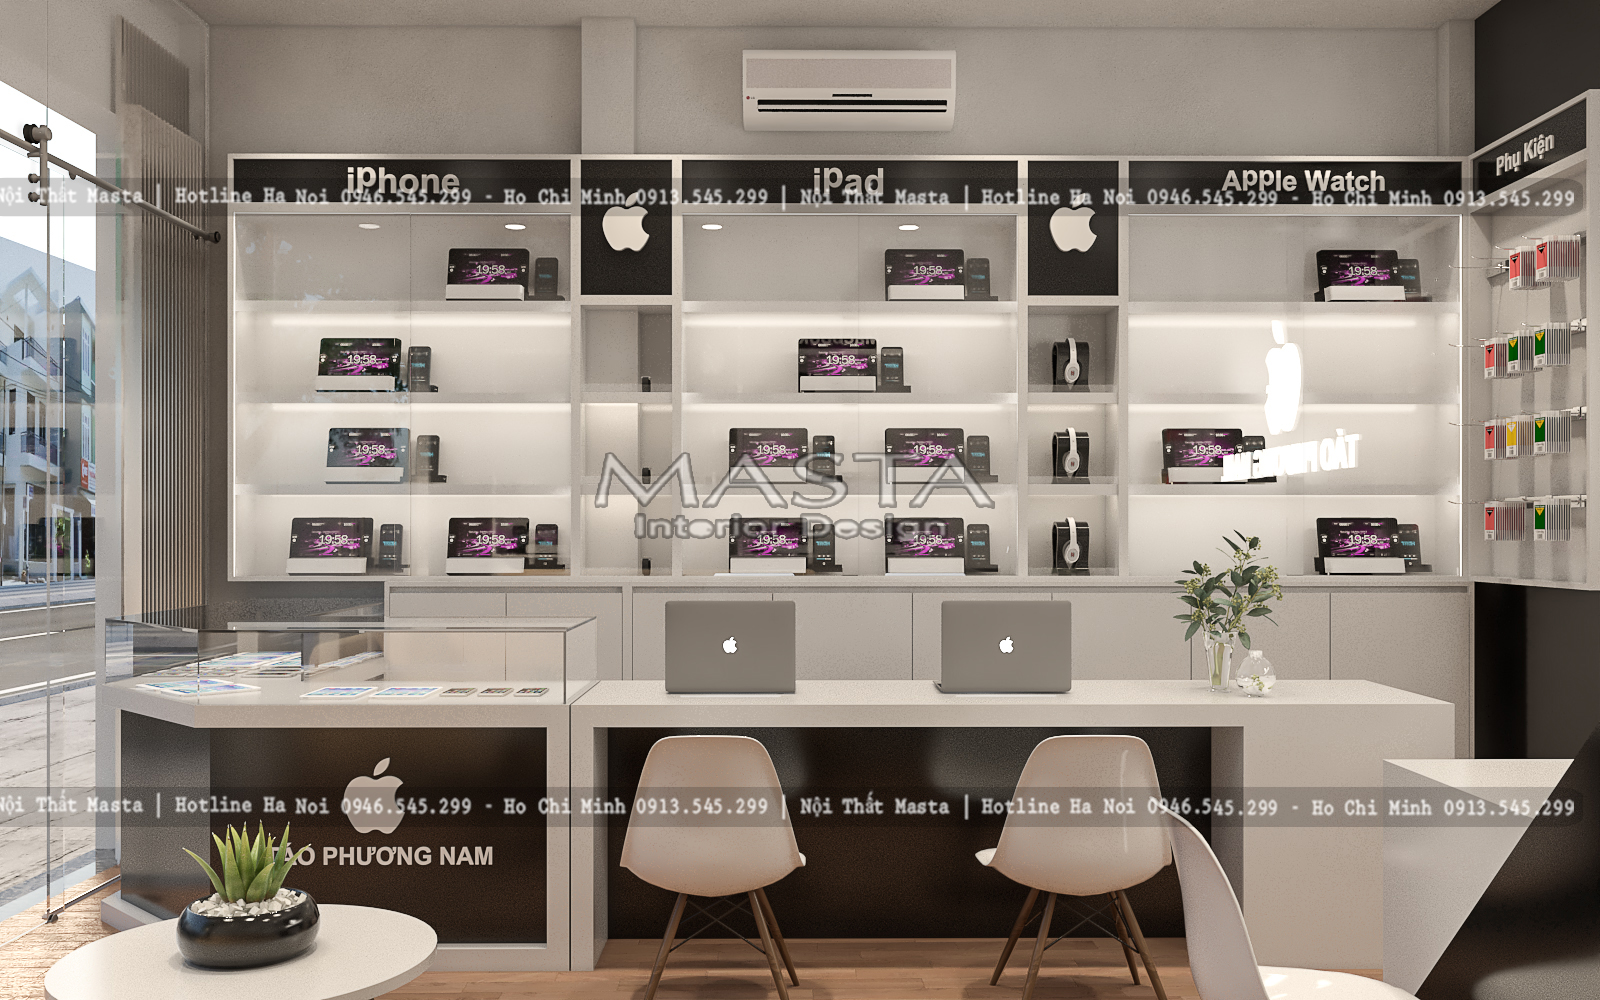 Thiết kế shop điện thoại Táo Phương Nam